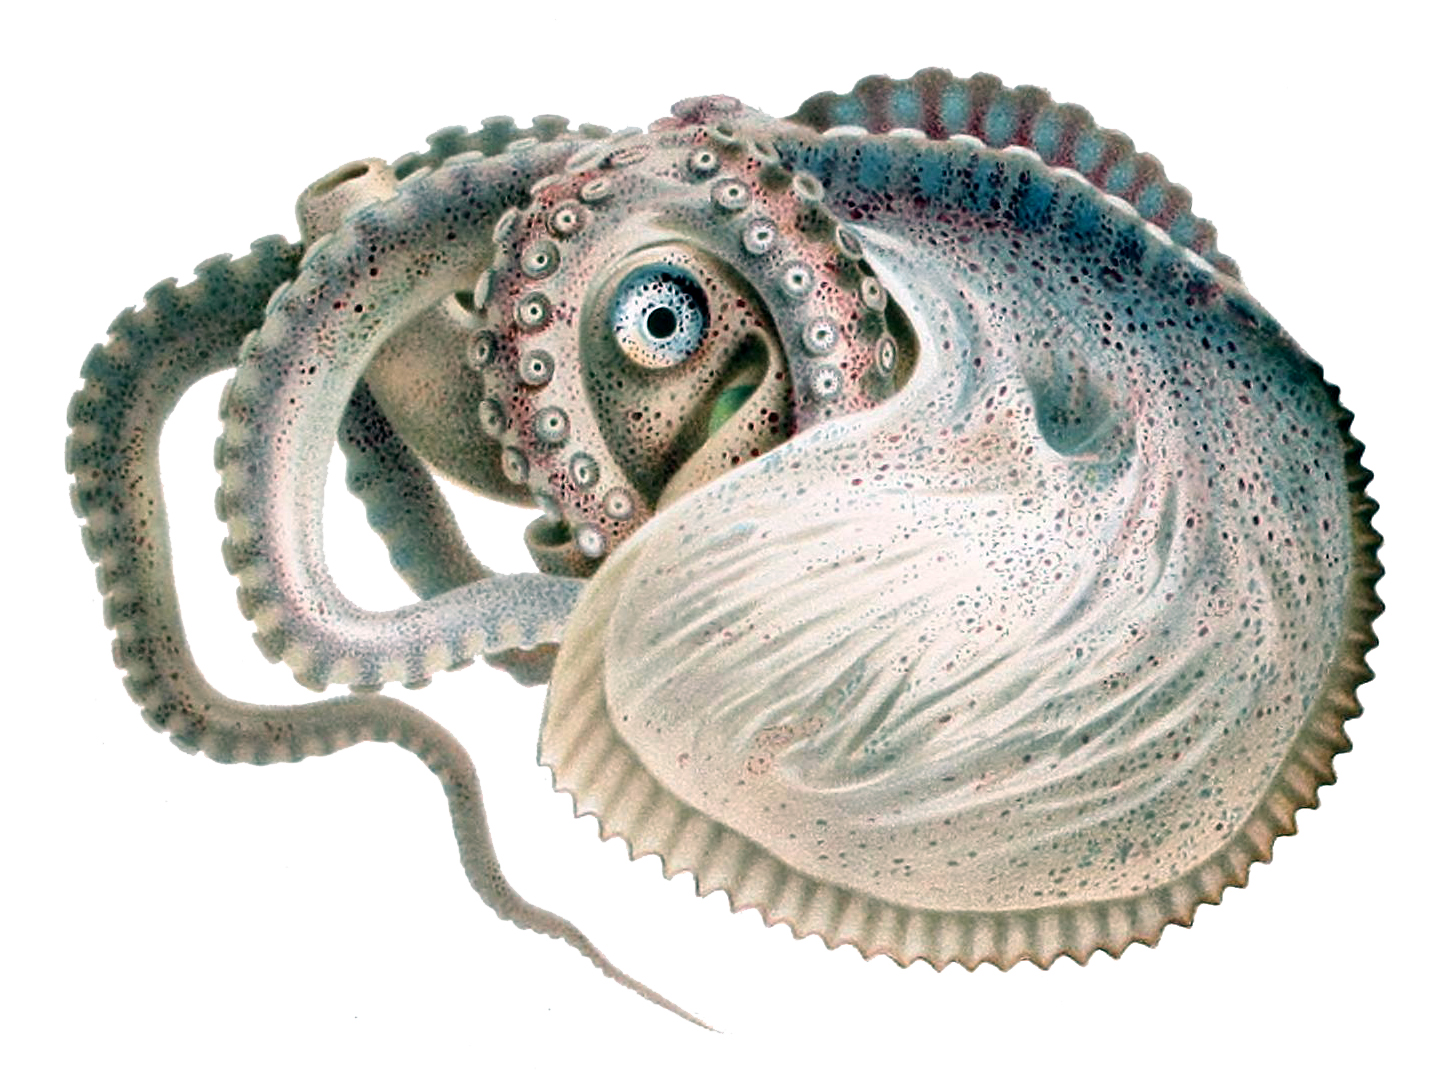 Meet the Argonaut, The World's Weirdest Octopus